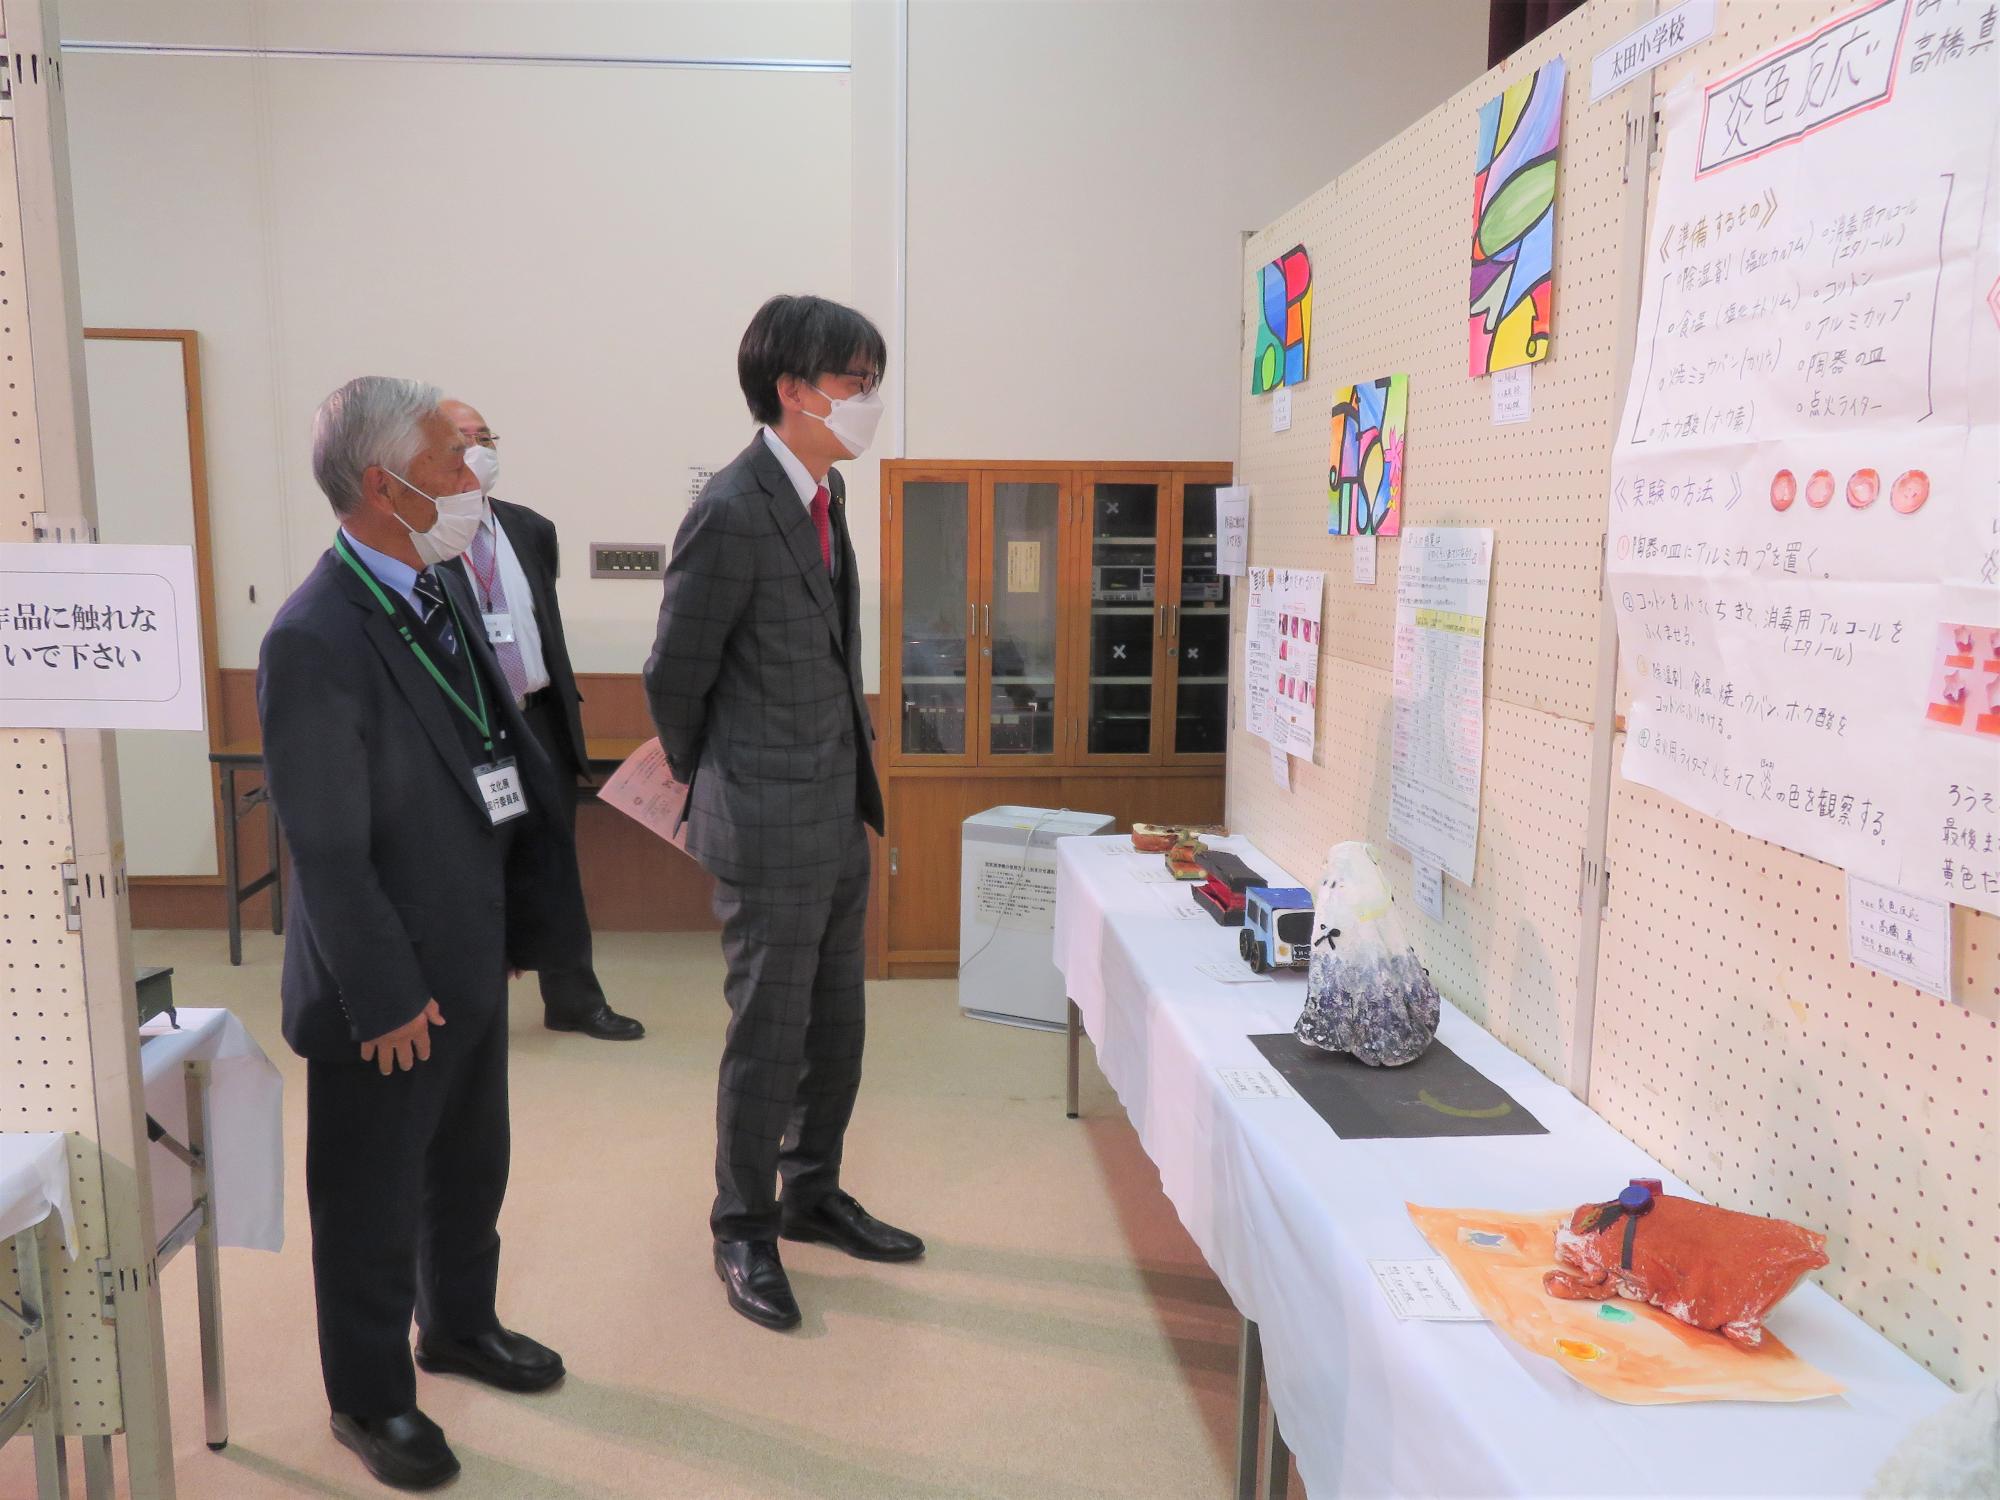 太田地区の文化展にて作品を観る市長の写真